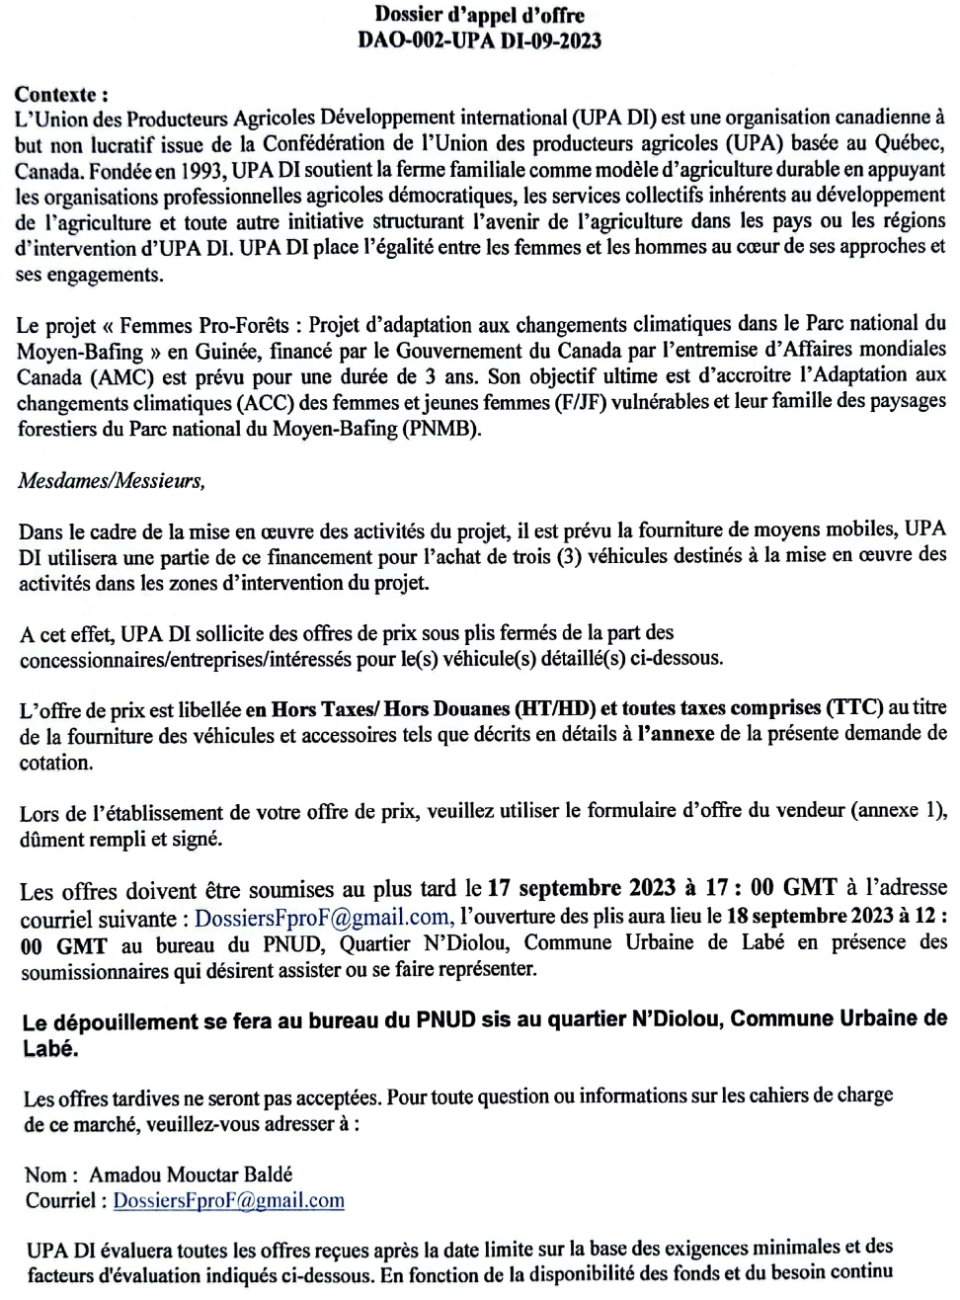 L'acquisition De Trois (3) Véhicules 4x4 Au Compte De UPA DI | Page 2